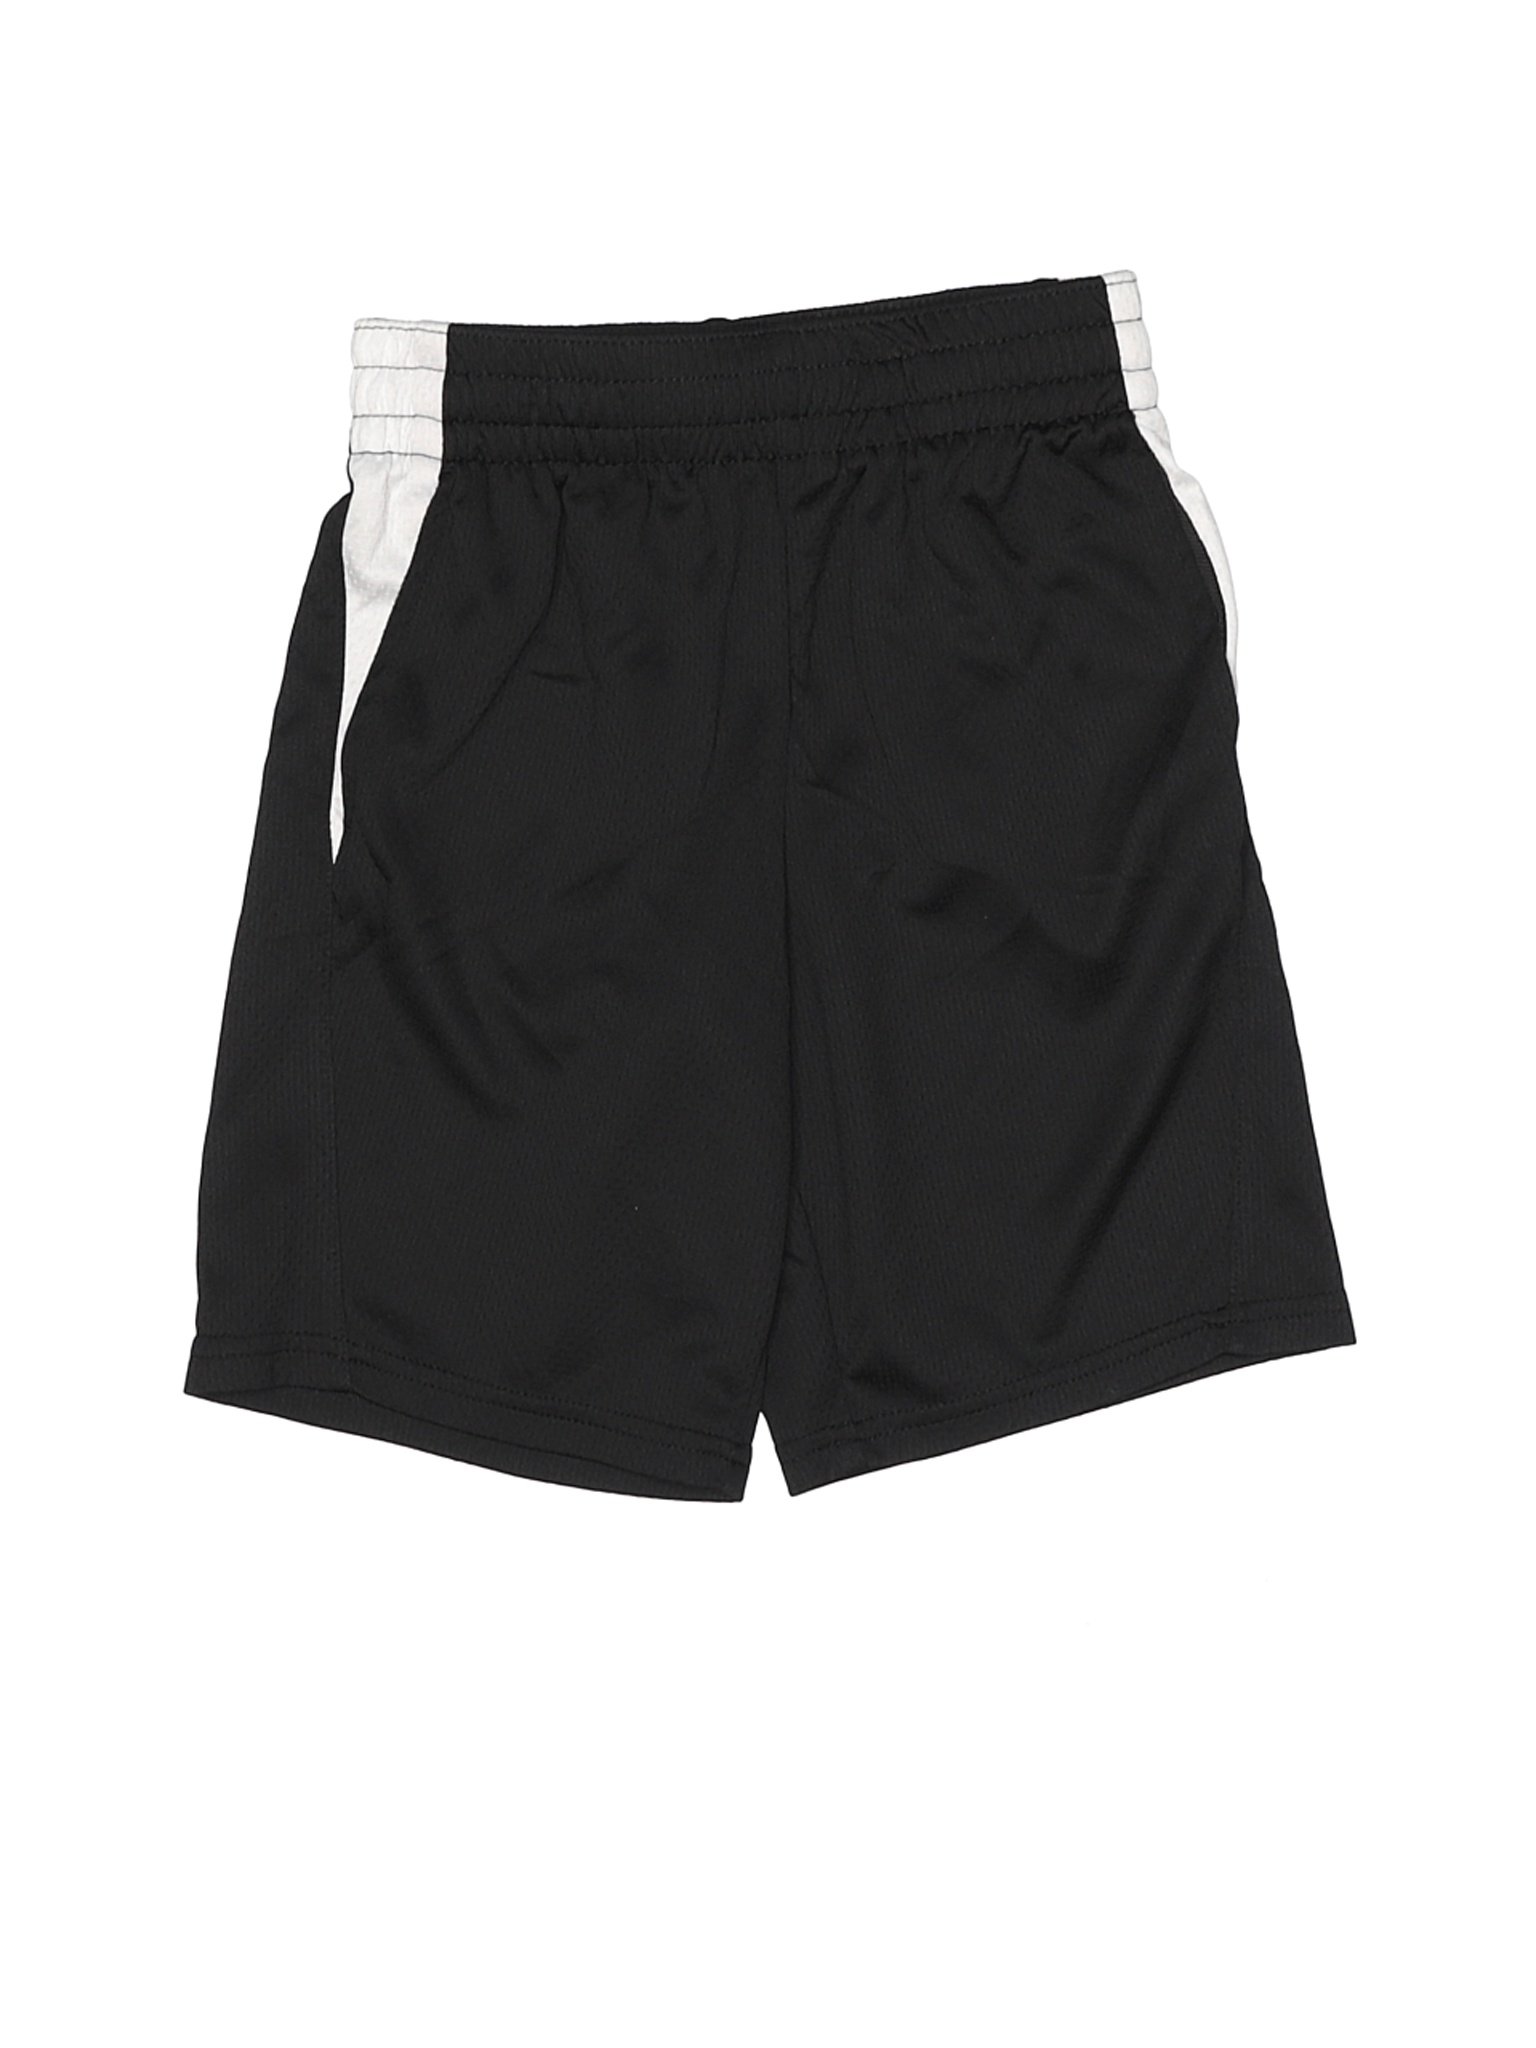 Athletic Works Boys Black Athletic Shorts 8 | eBay